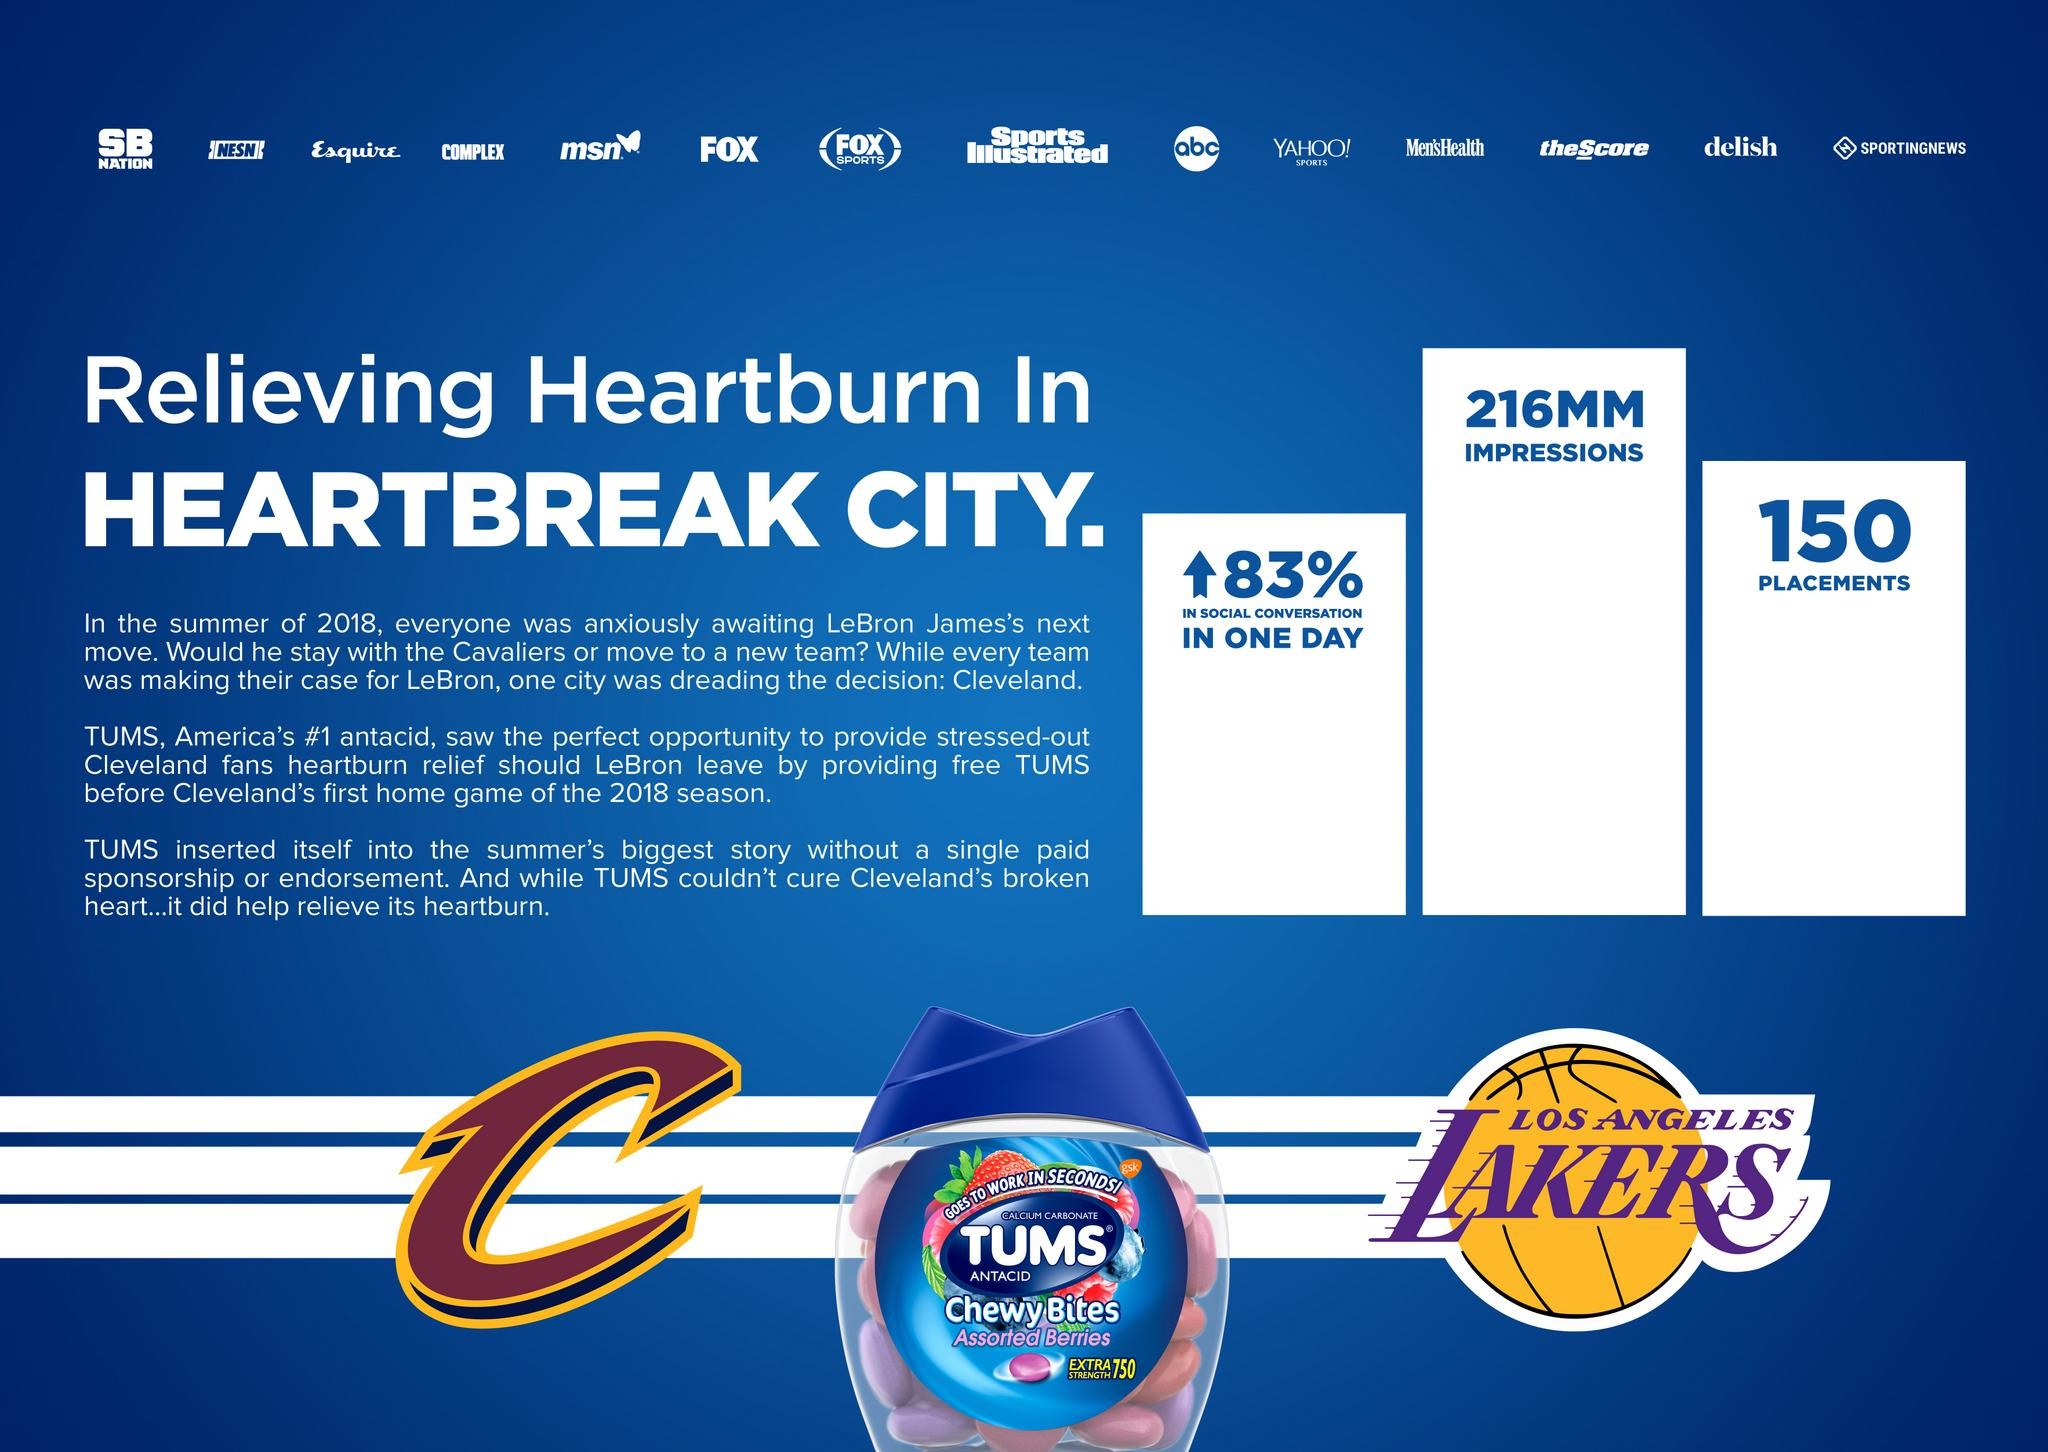 Relieving Heartburn in Heartbreak City